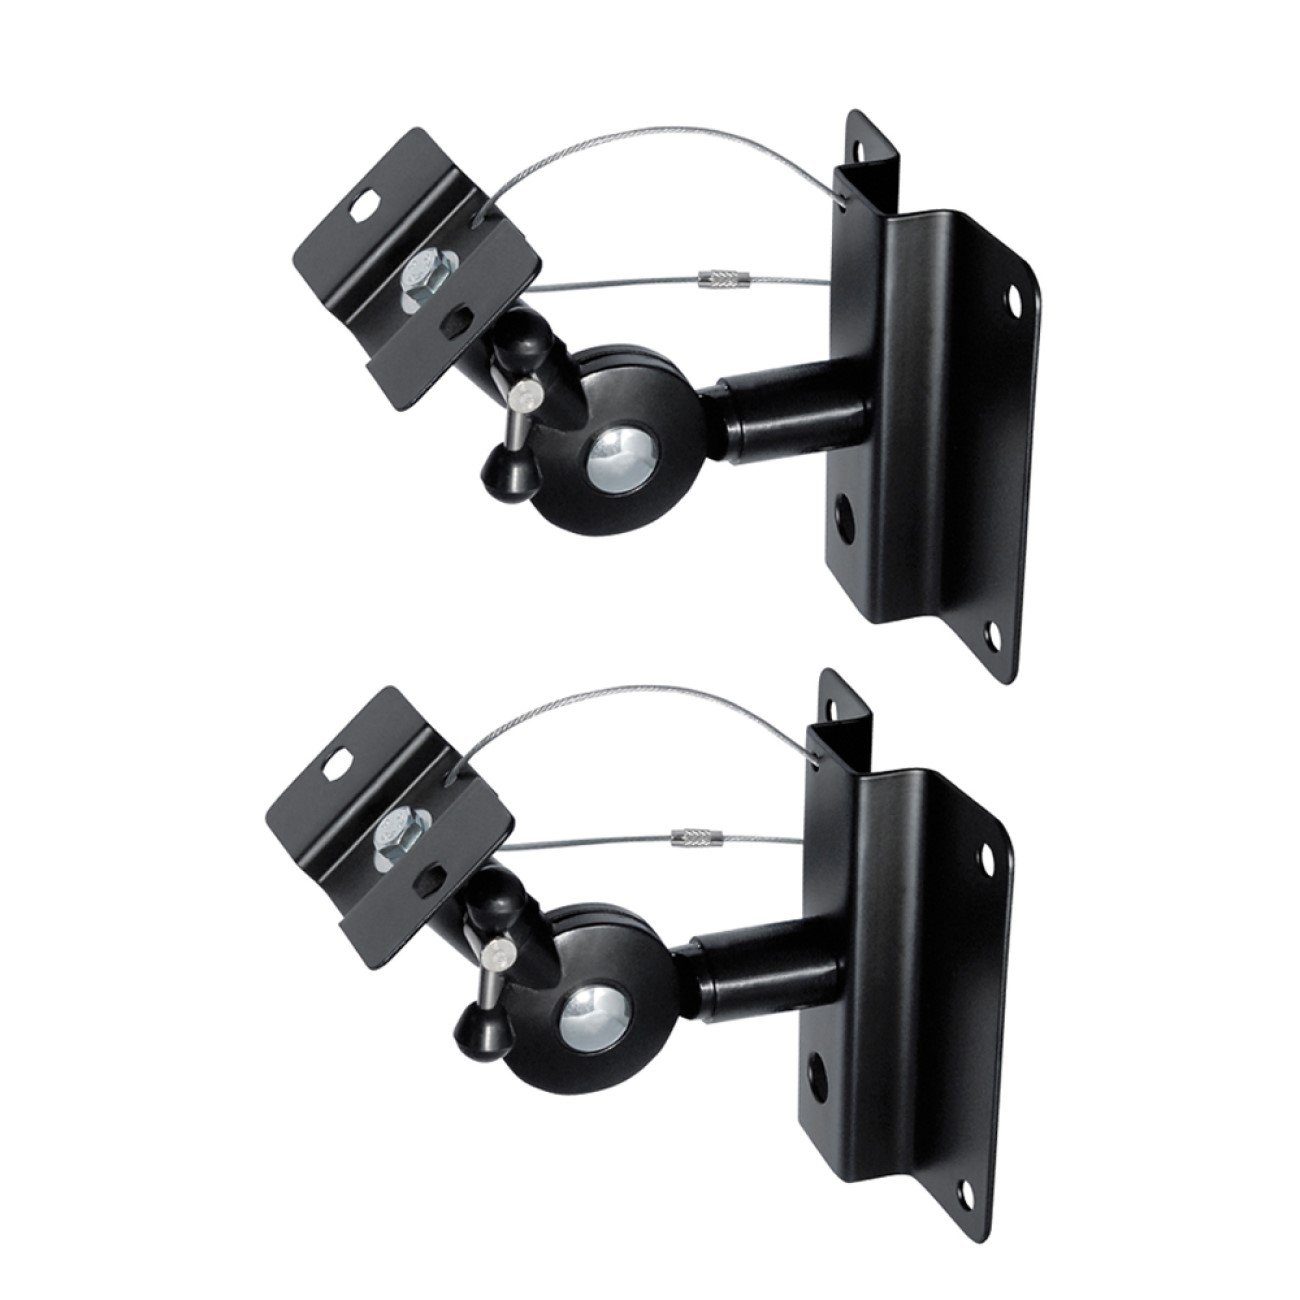 ARLI Wandhalter für Lautsprecher Wandhalterungen Halterung Lautsprecher-Wandhalterung, (inkl. Montageanleitung und Befestigungsmaterial, 2 er Pack, Set)